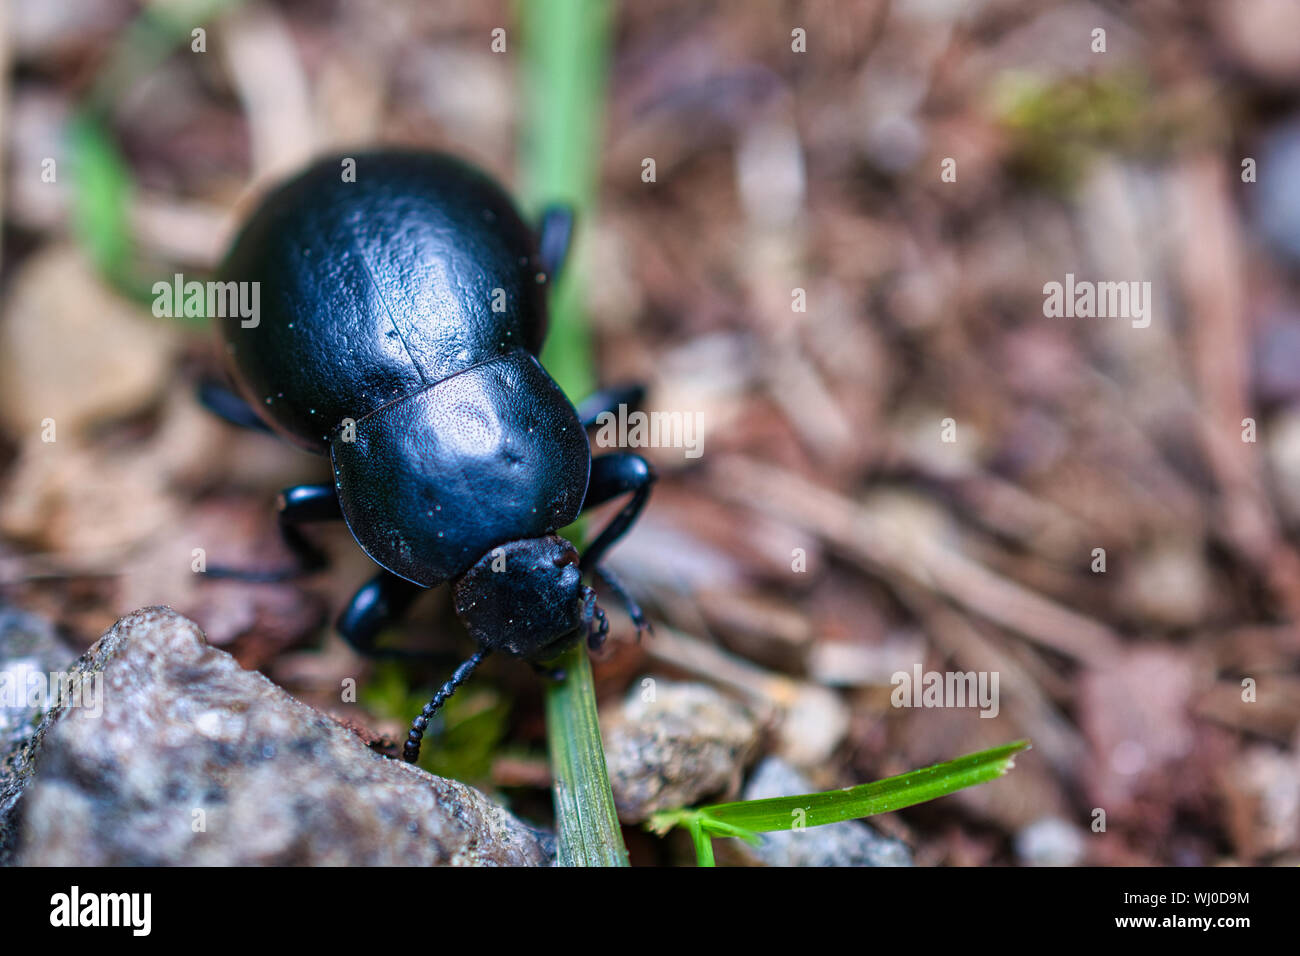 Coléoptère peut manger une herbe, close-up bug photo Banque D'Images